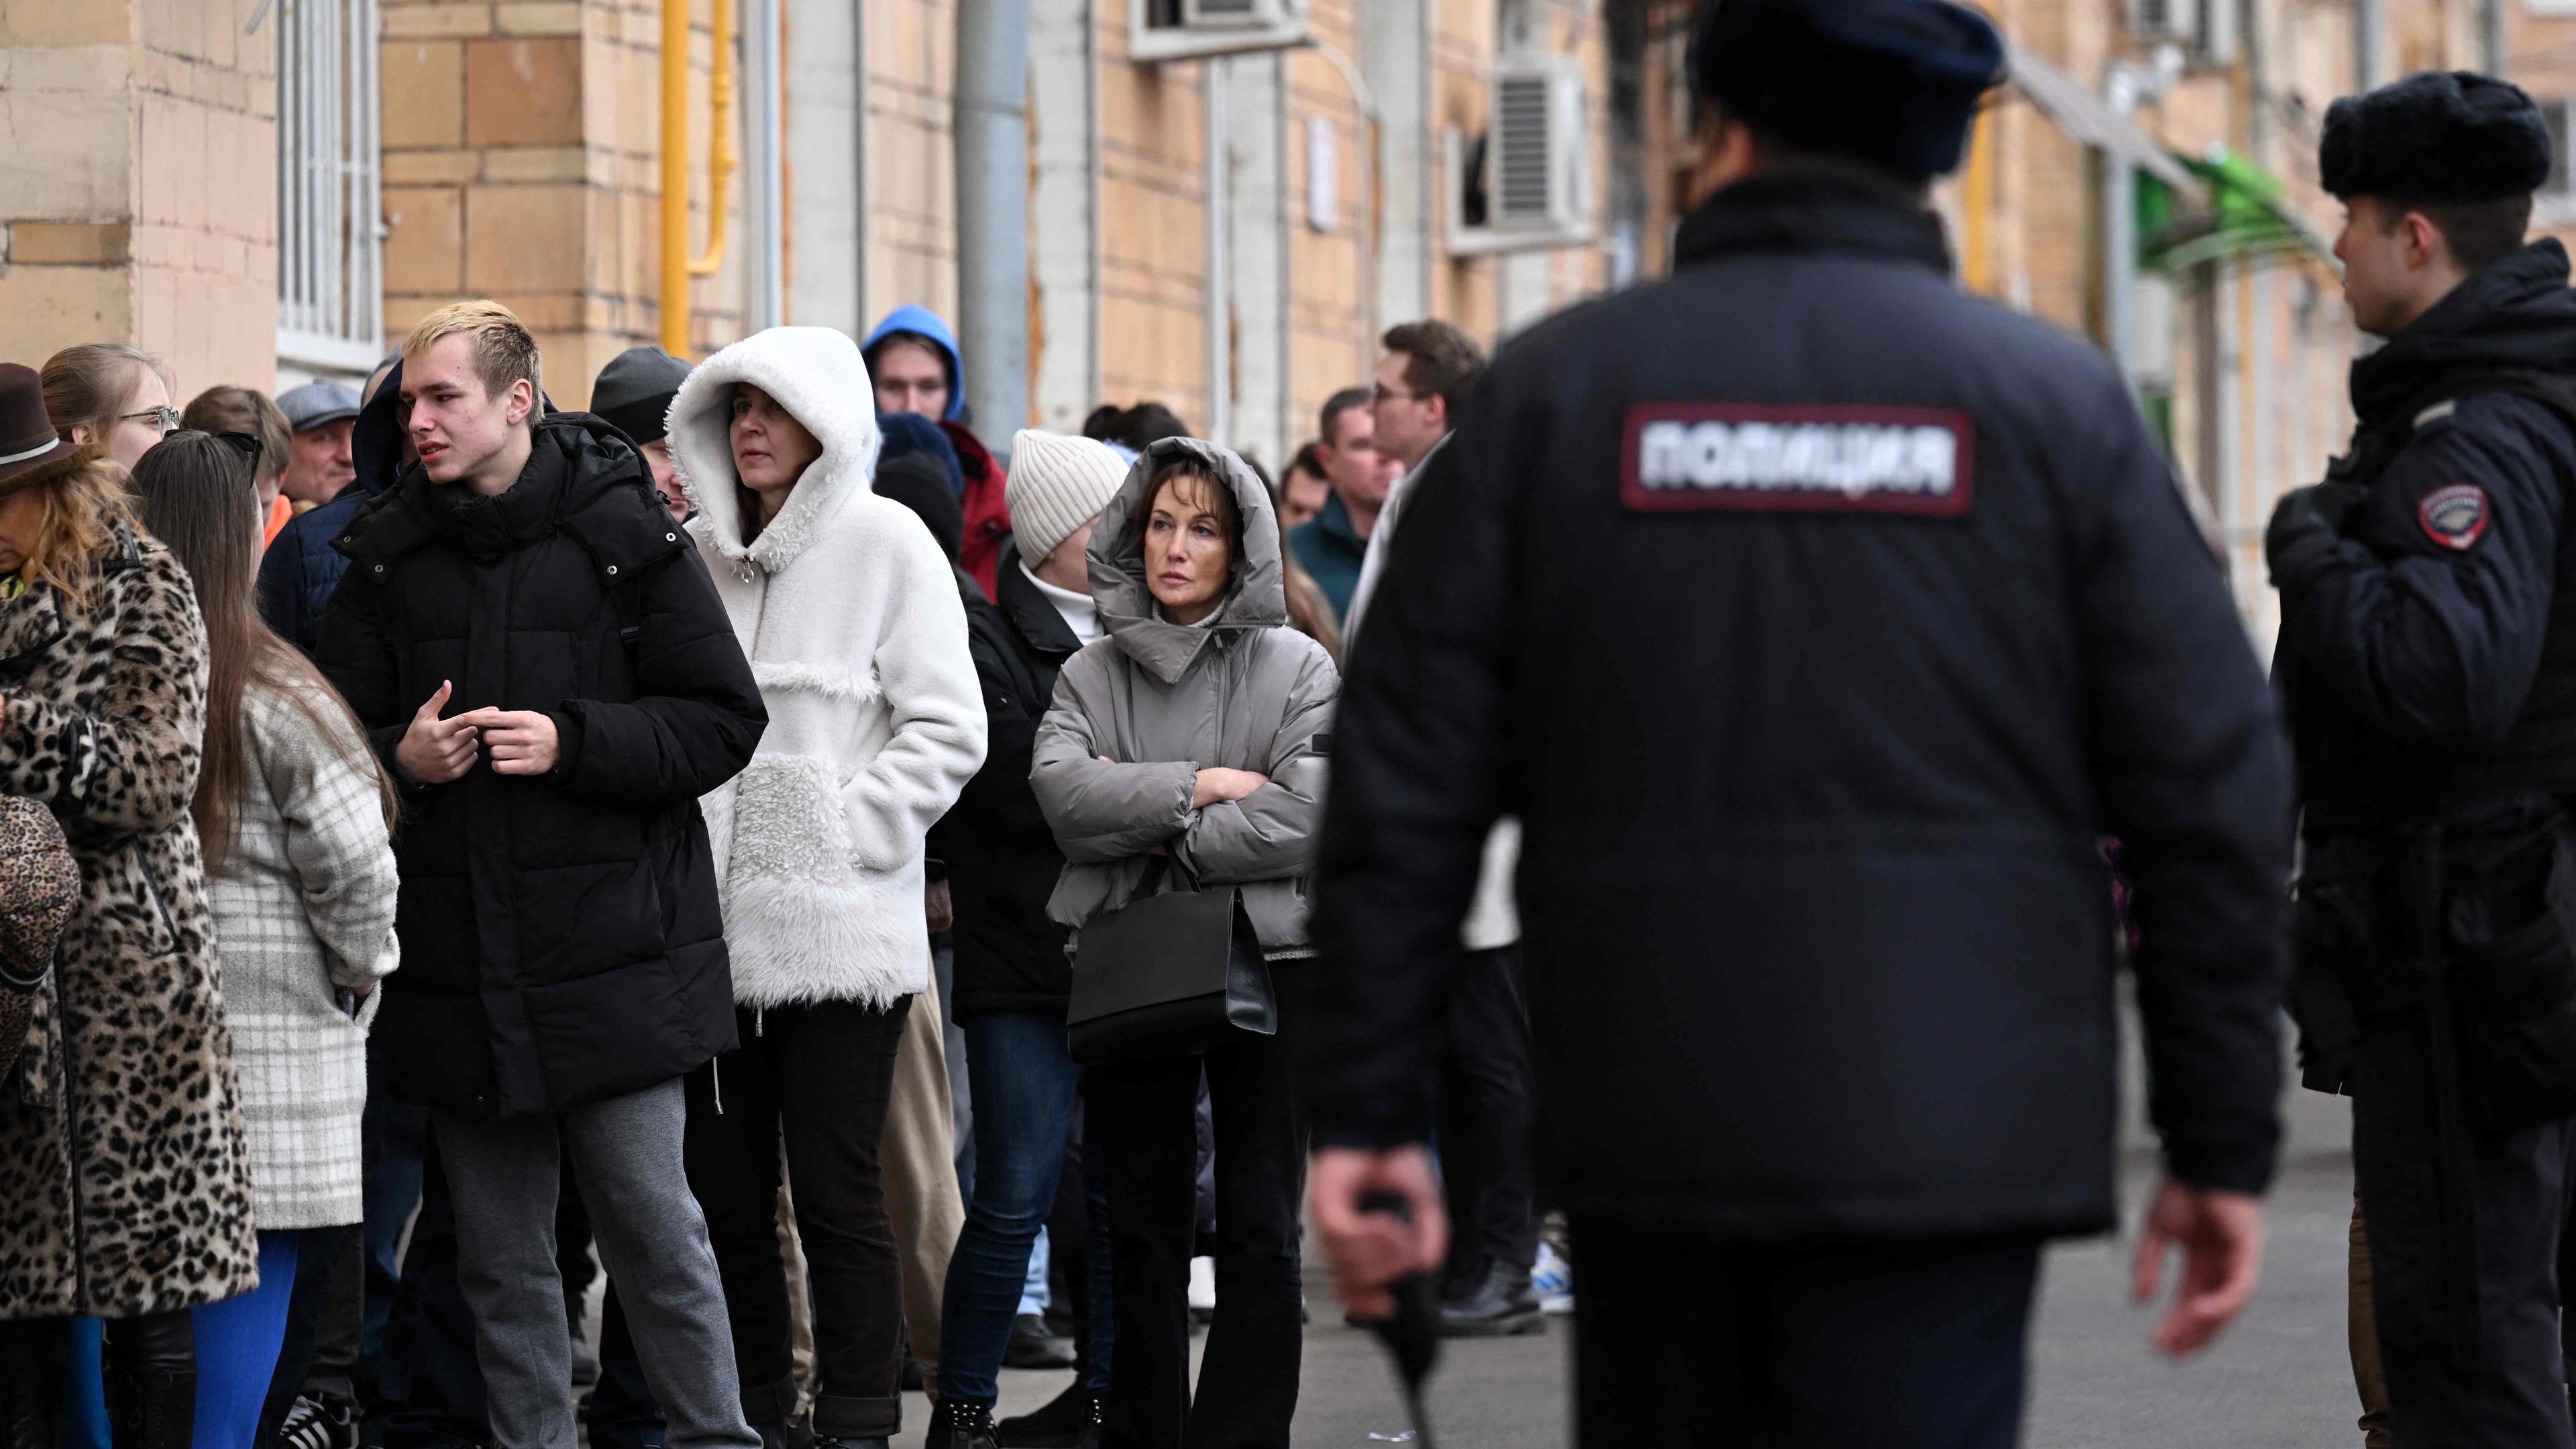 Meschen stehen in einer Warteschlange vor einem Wahllokal in Moskau